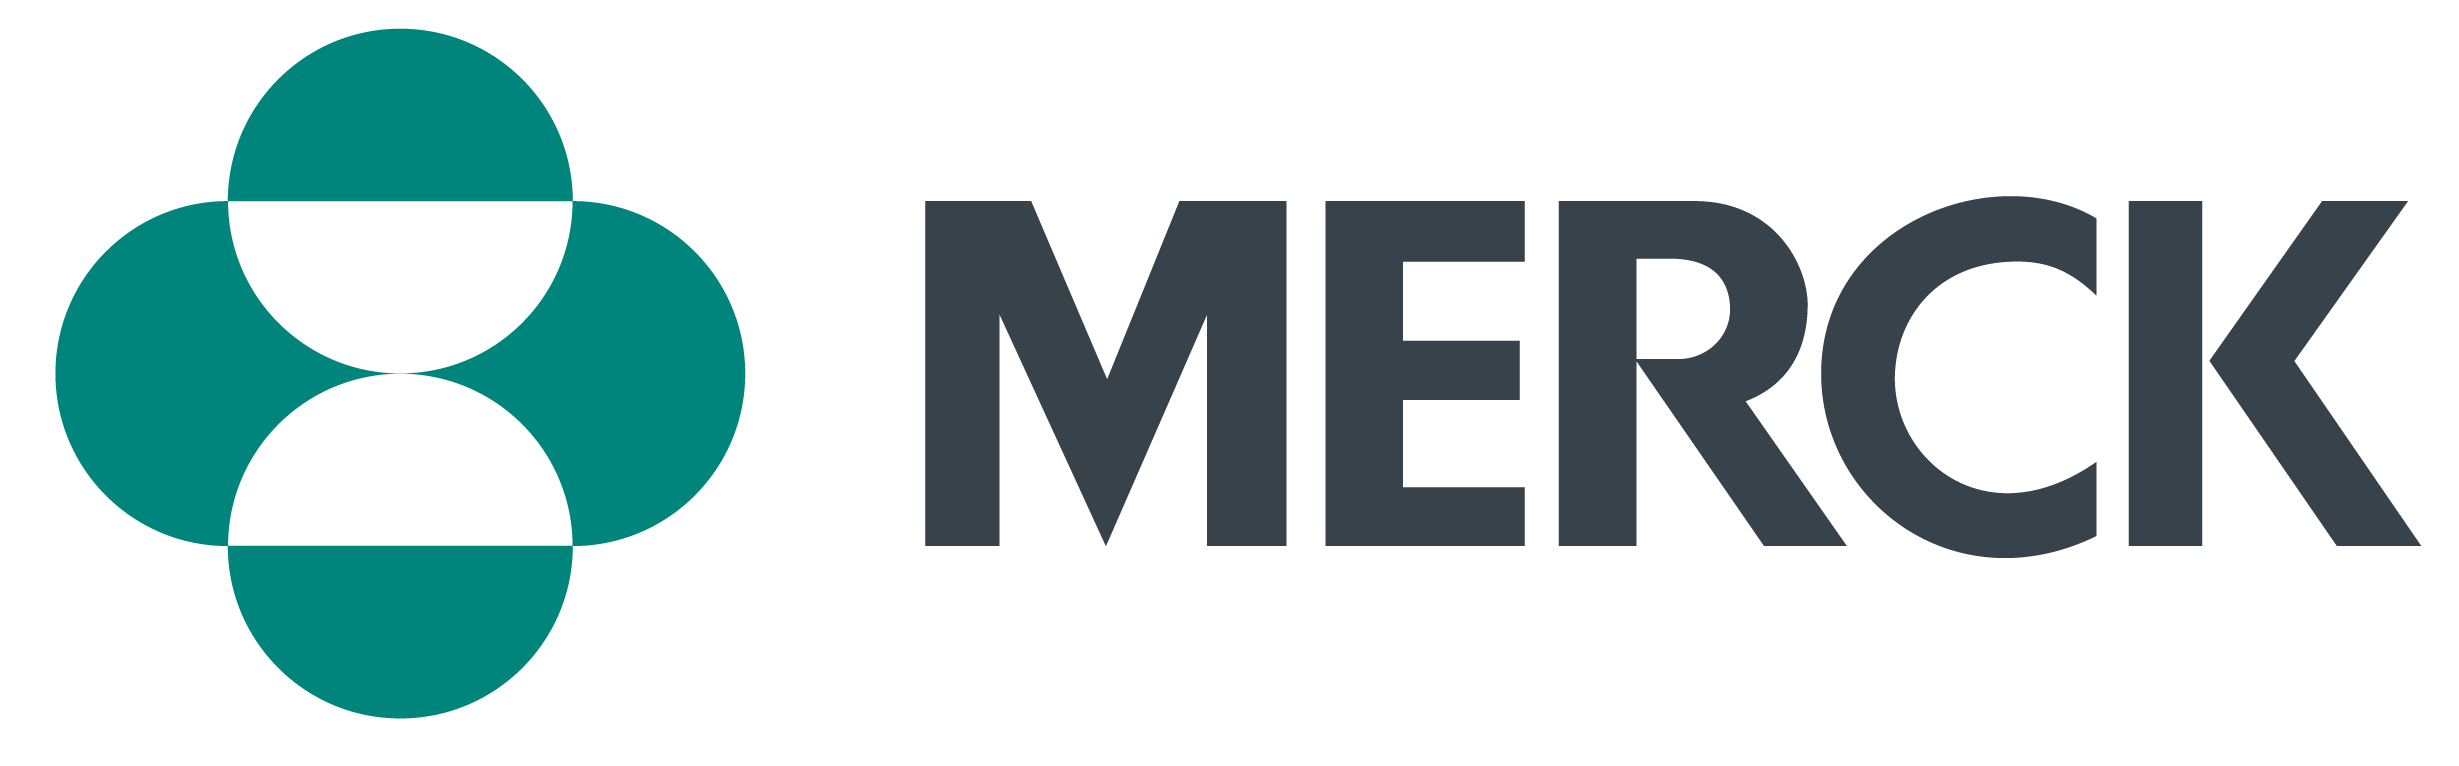 Merck_Logo_Horizontal